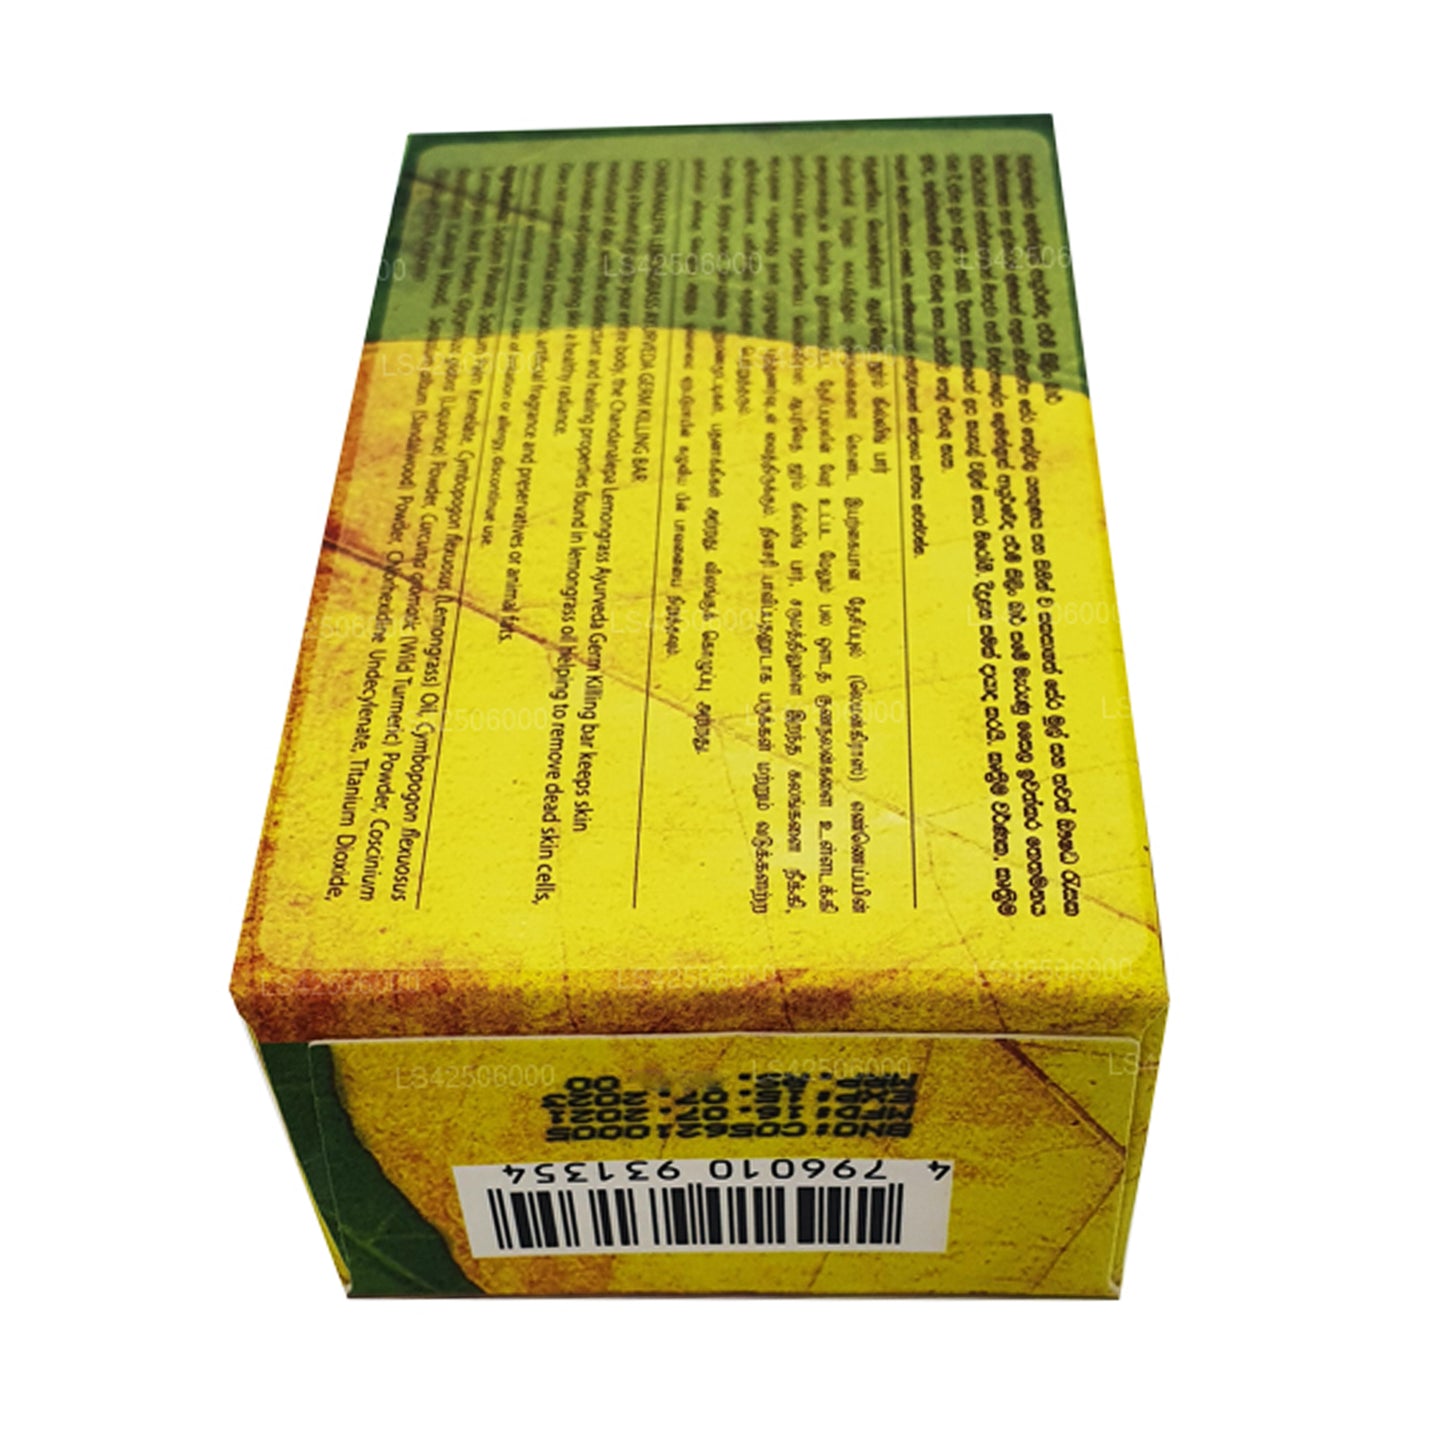 Аюрведическое мыло для уничтожения микробов Chandanalepa с лимонной травой (100 г)